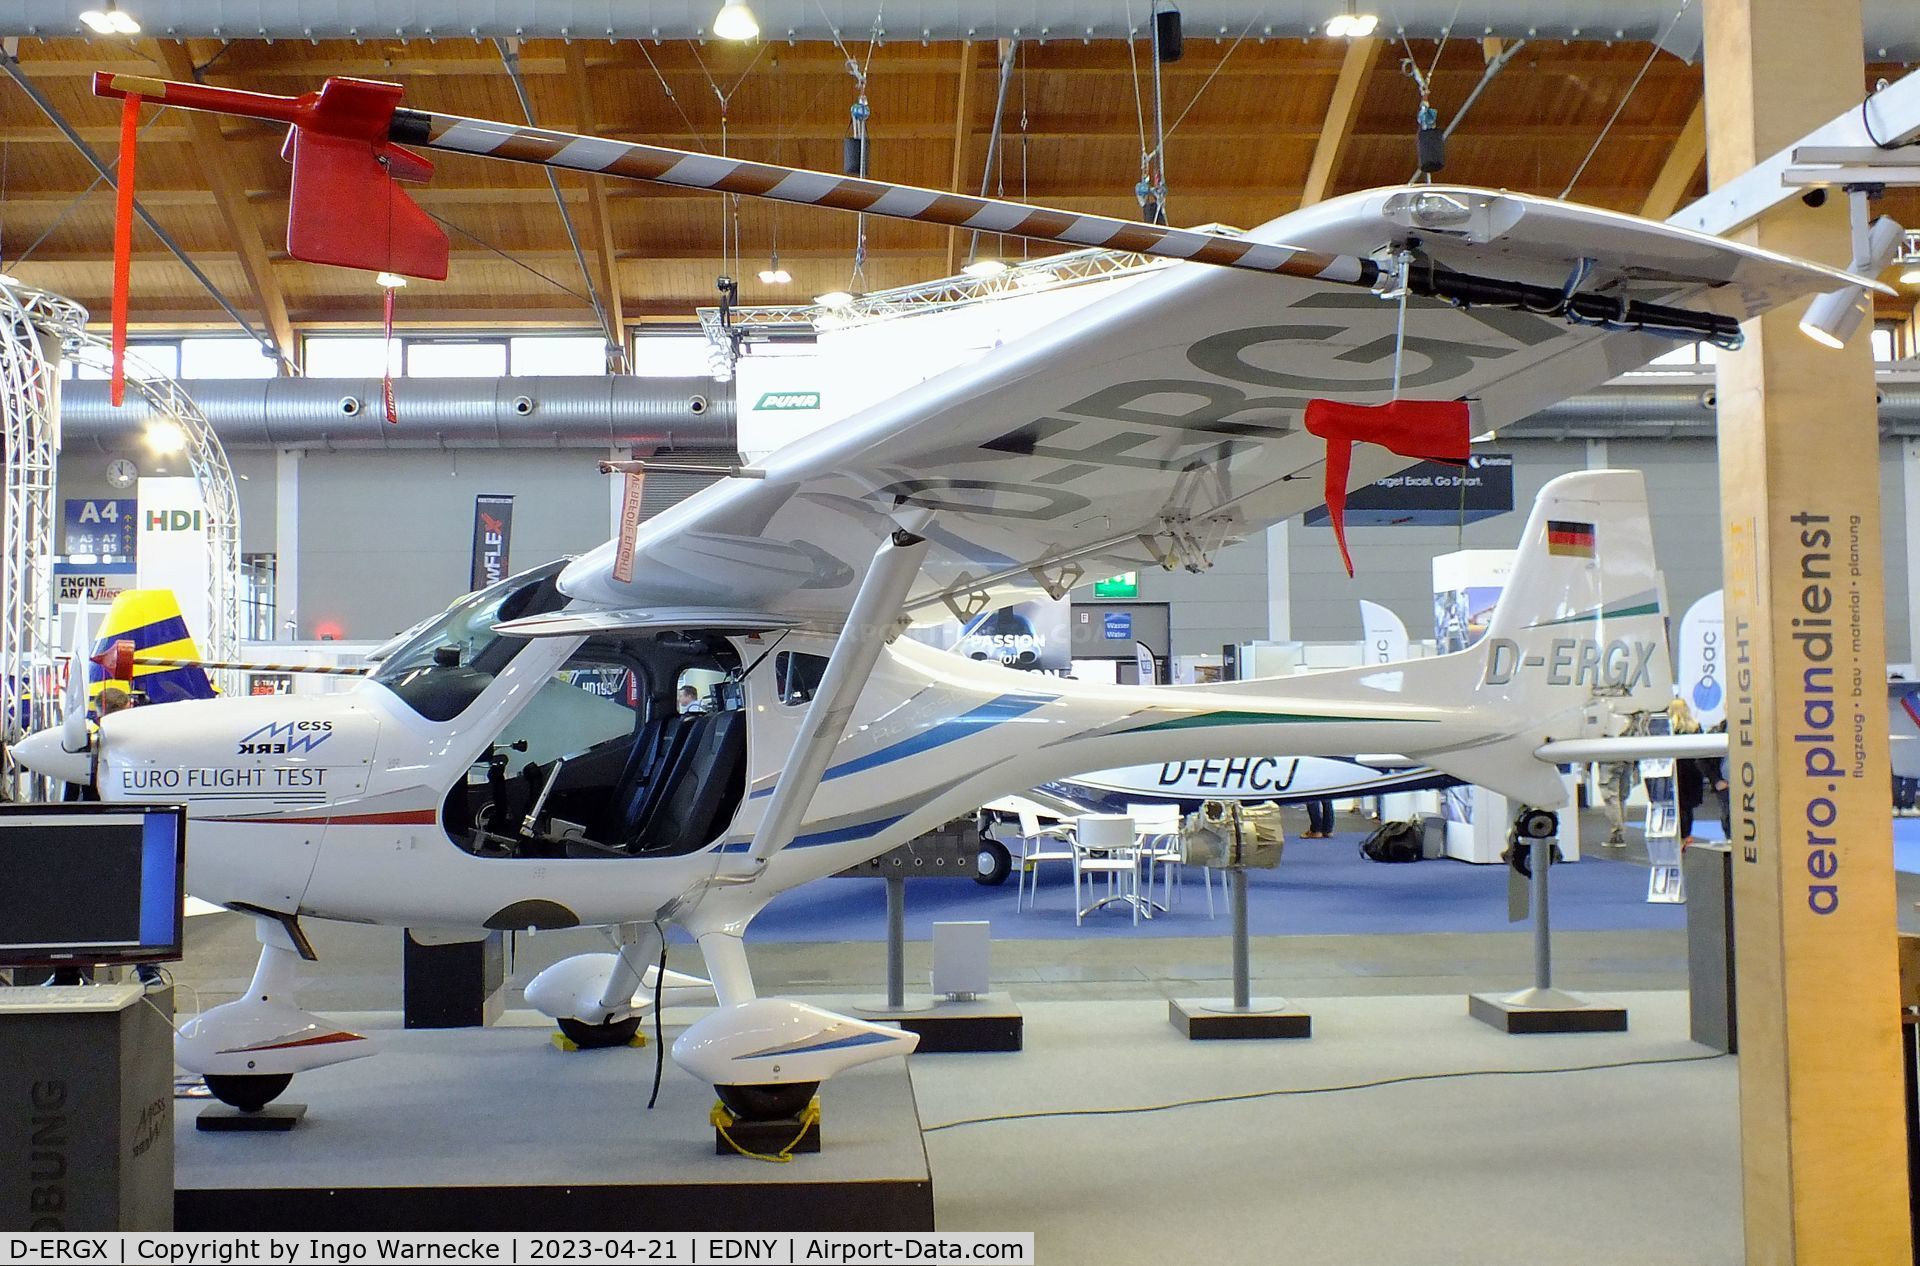 D-ERGX, 2012 Remos GX C/N 418, Remos GX with underwing sensor-pod at the AERO 2023, Friedrichshafen